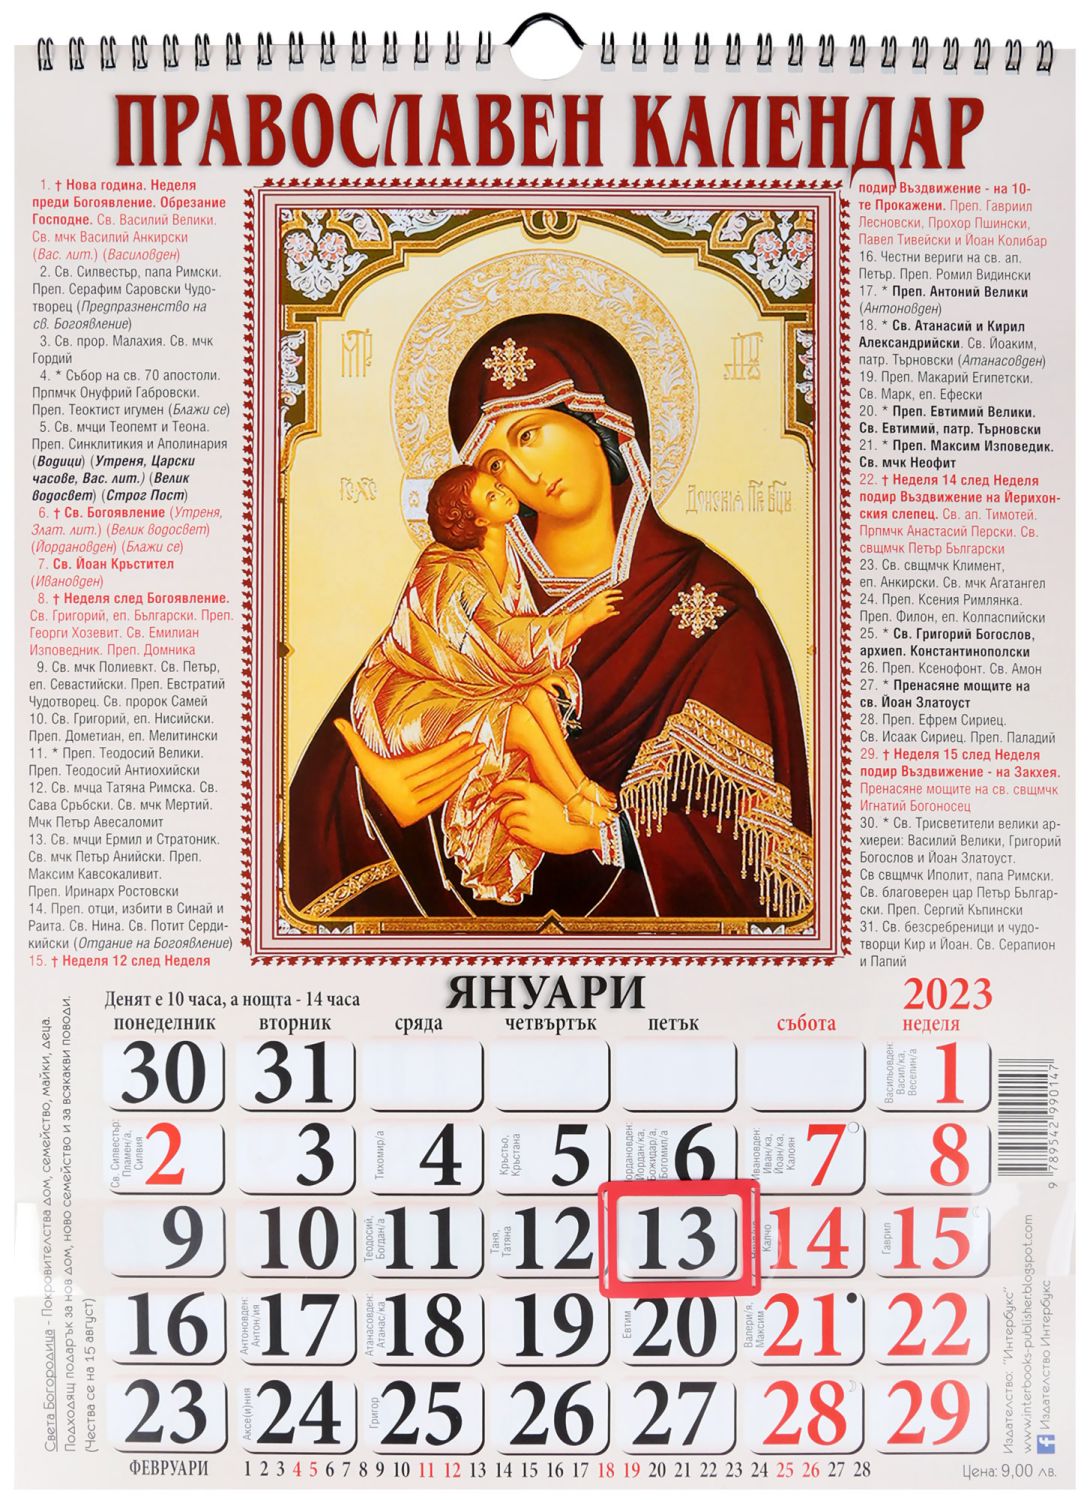 Stenen Pravoslaven Kalendar 2023 